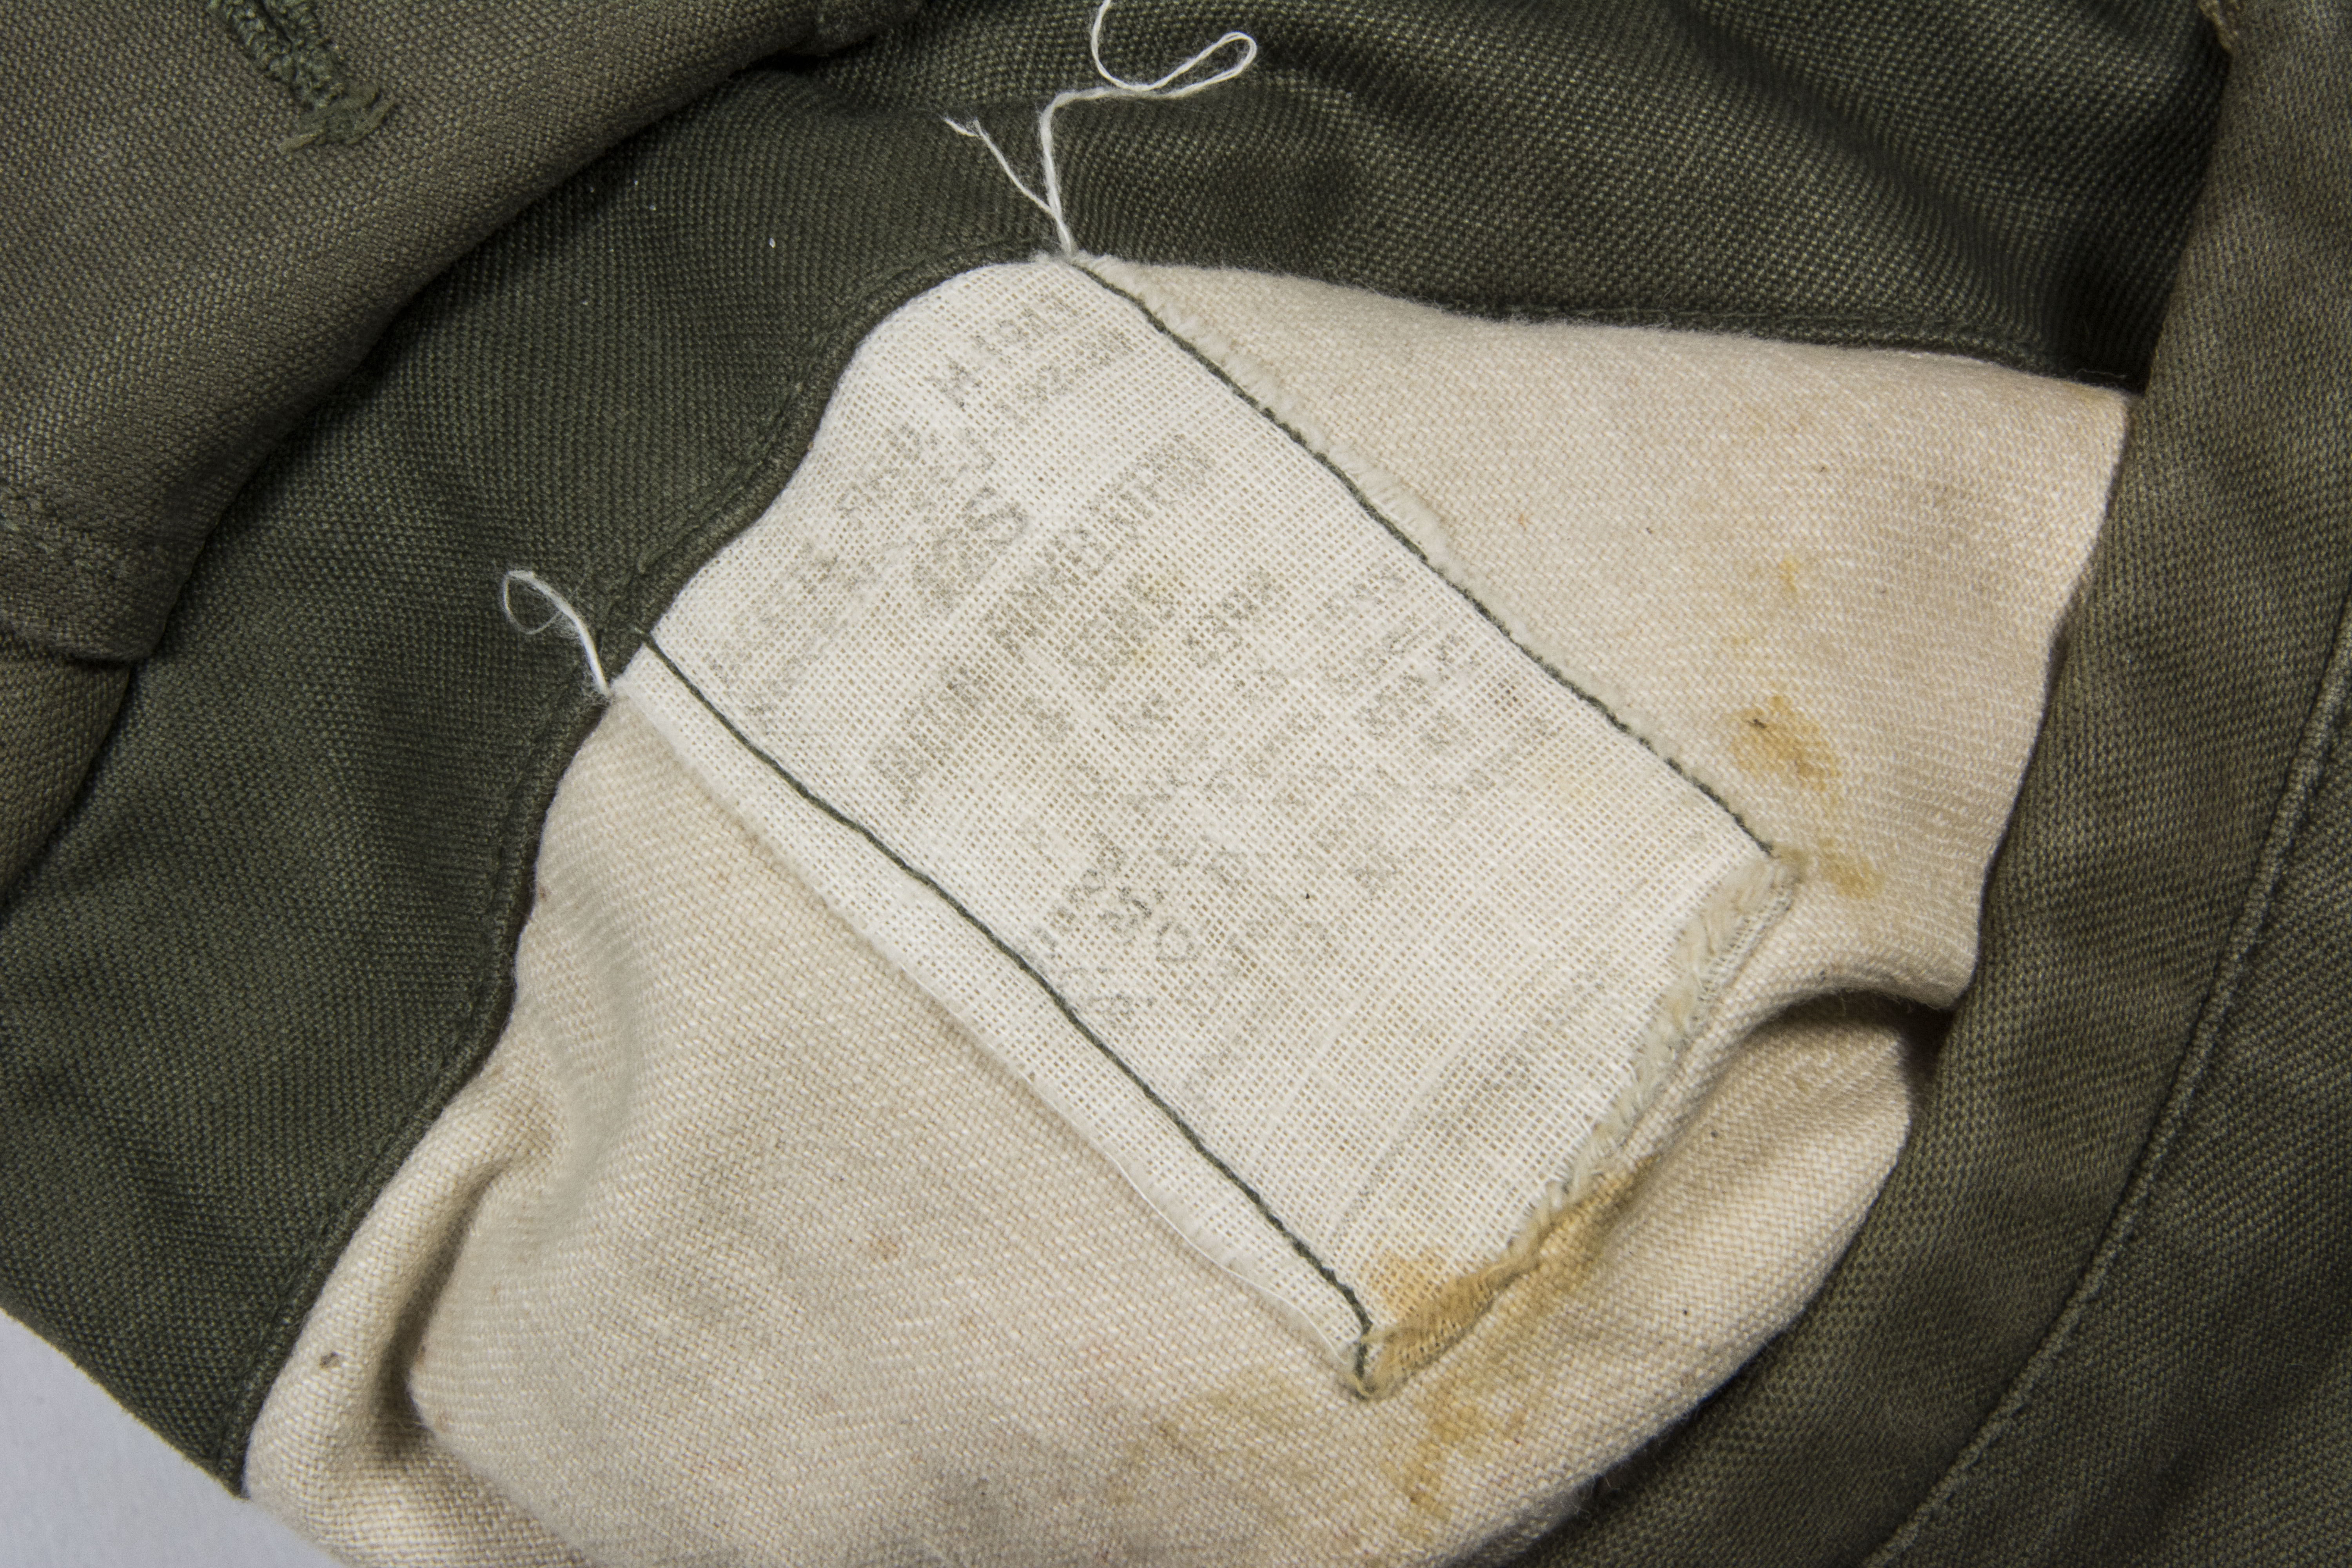 First pattern US M1943 field jacket Jacob Finkelstein & Sons size 42S ...